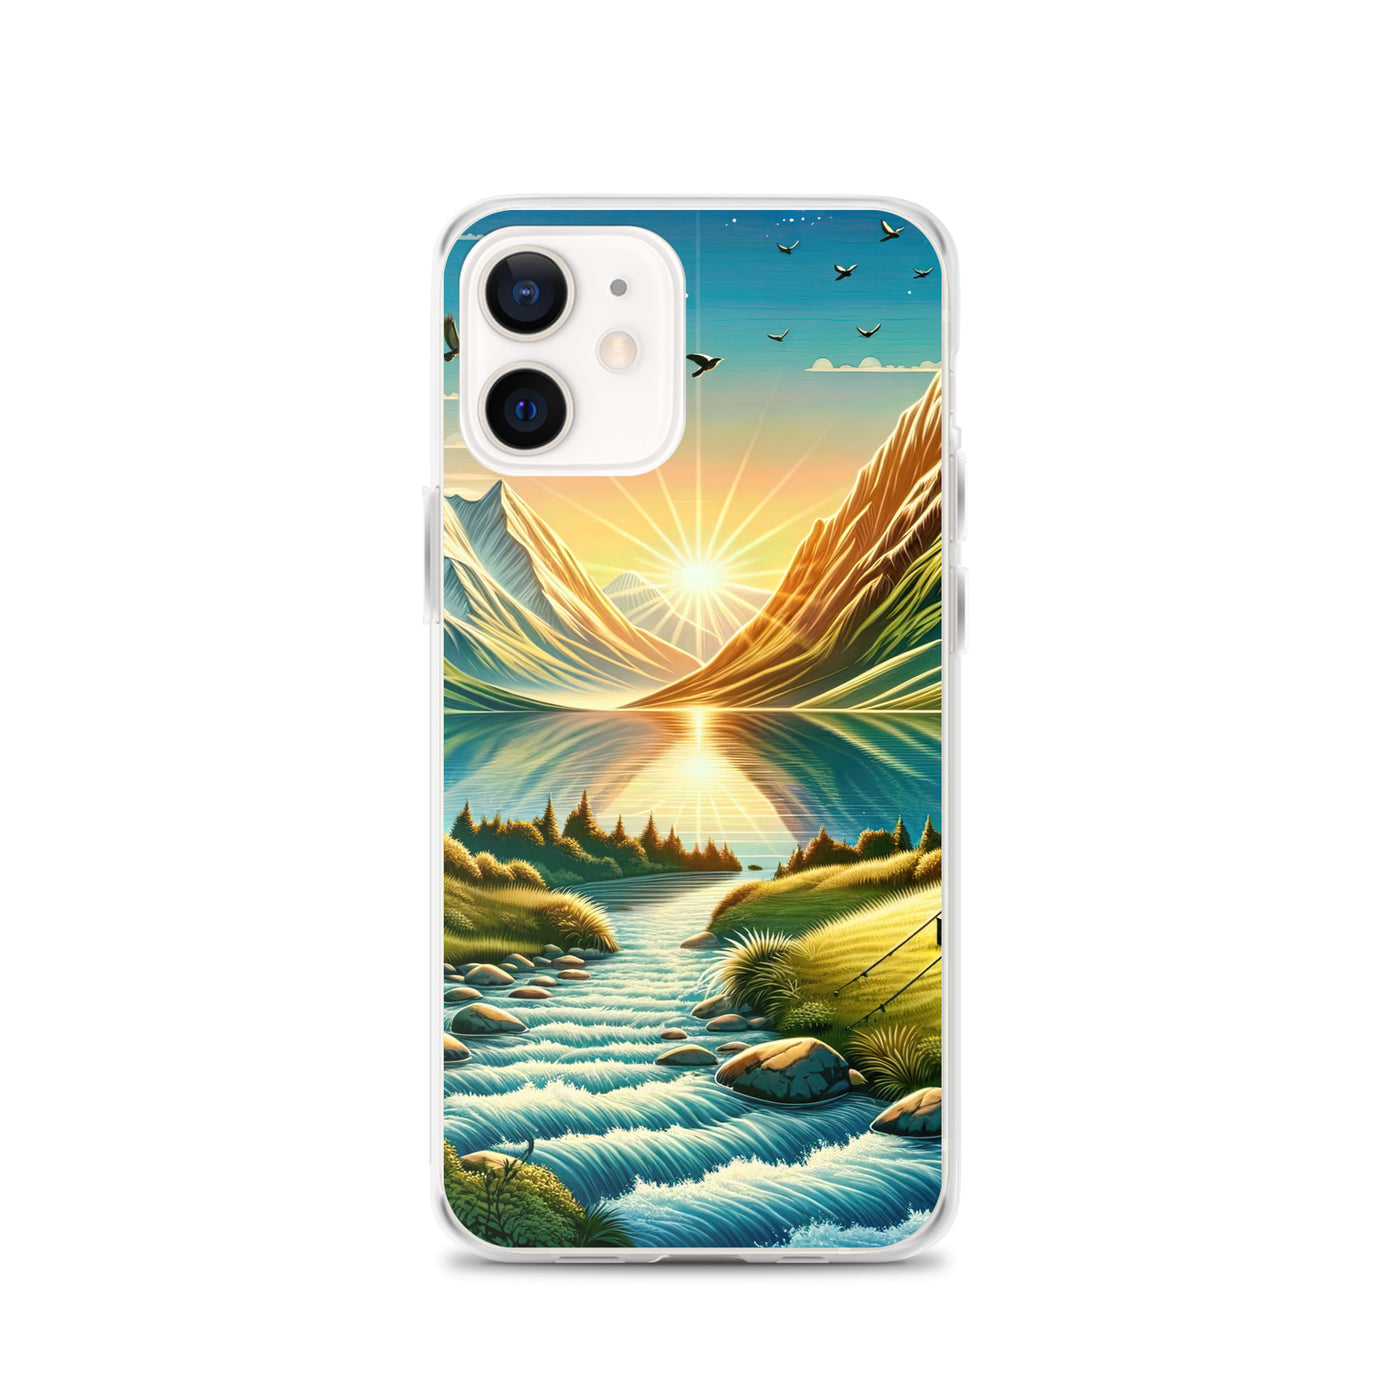 Zelt im Alpenmorgen mit goldenem Licht, Schneebergen und unberührten Seen - iPhone Schutzhülle (durchsichtig) berge xxx yyy zzz iPhone 12